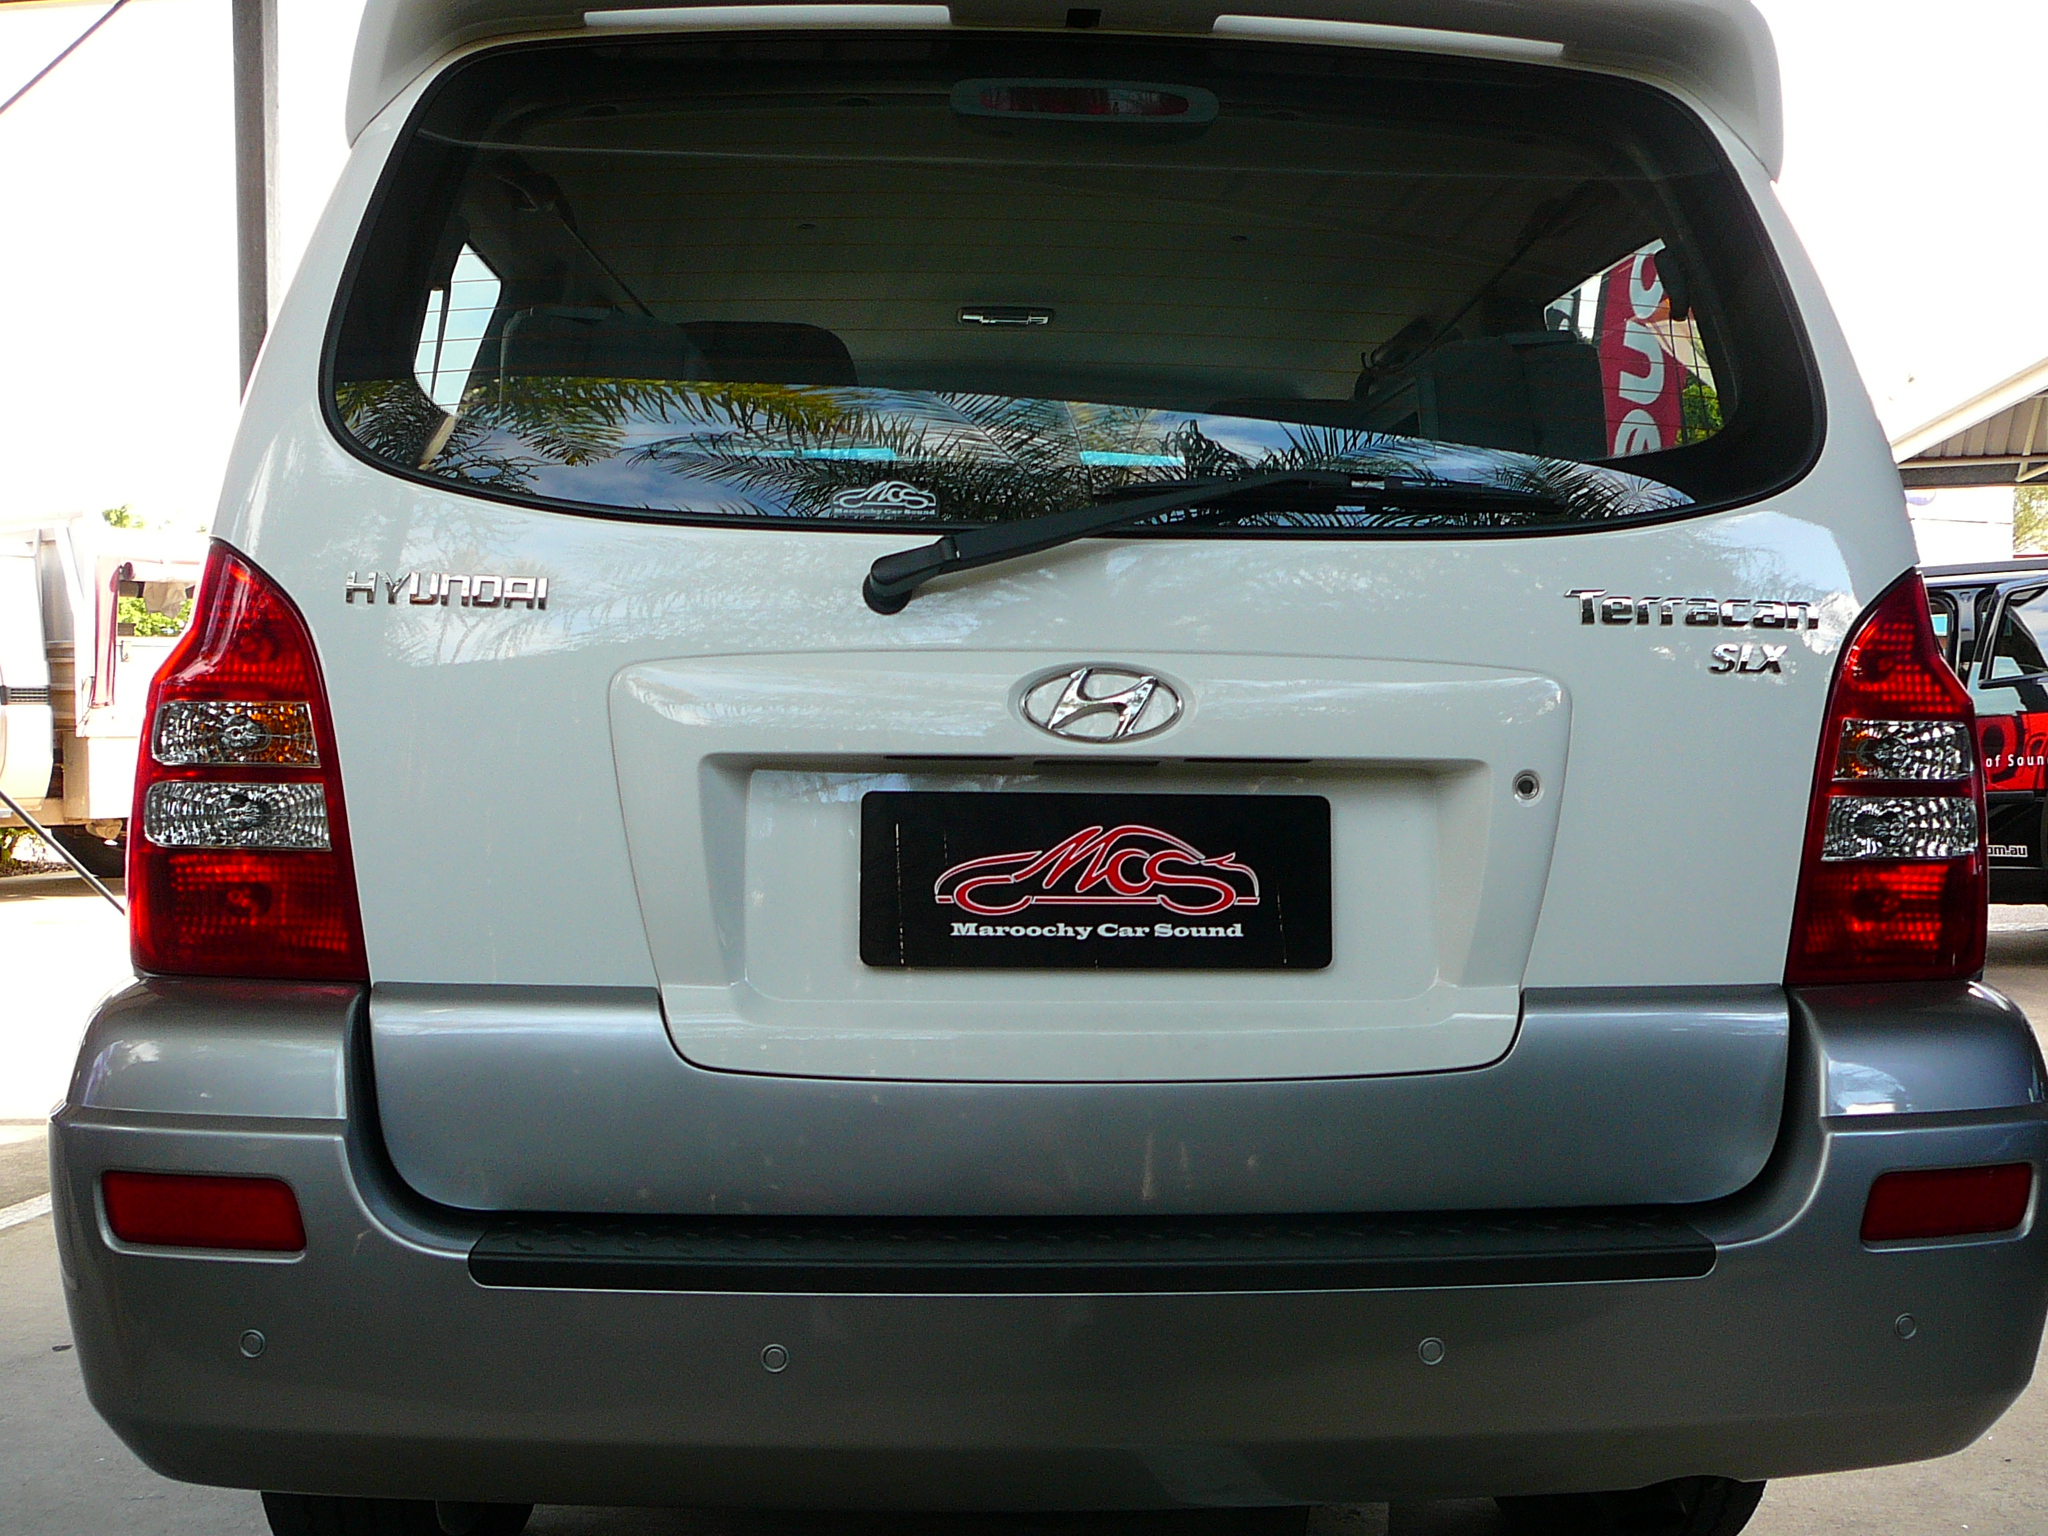 Hyundai Terracan 2006, Reverse sensor system